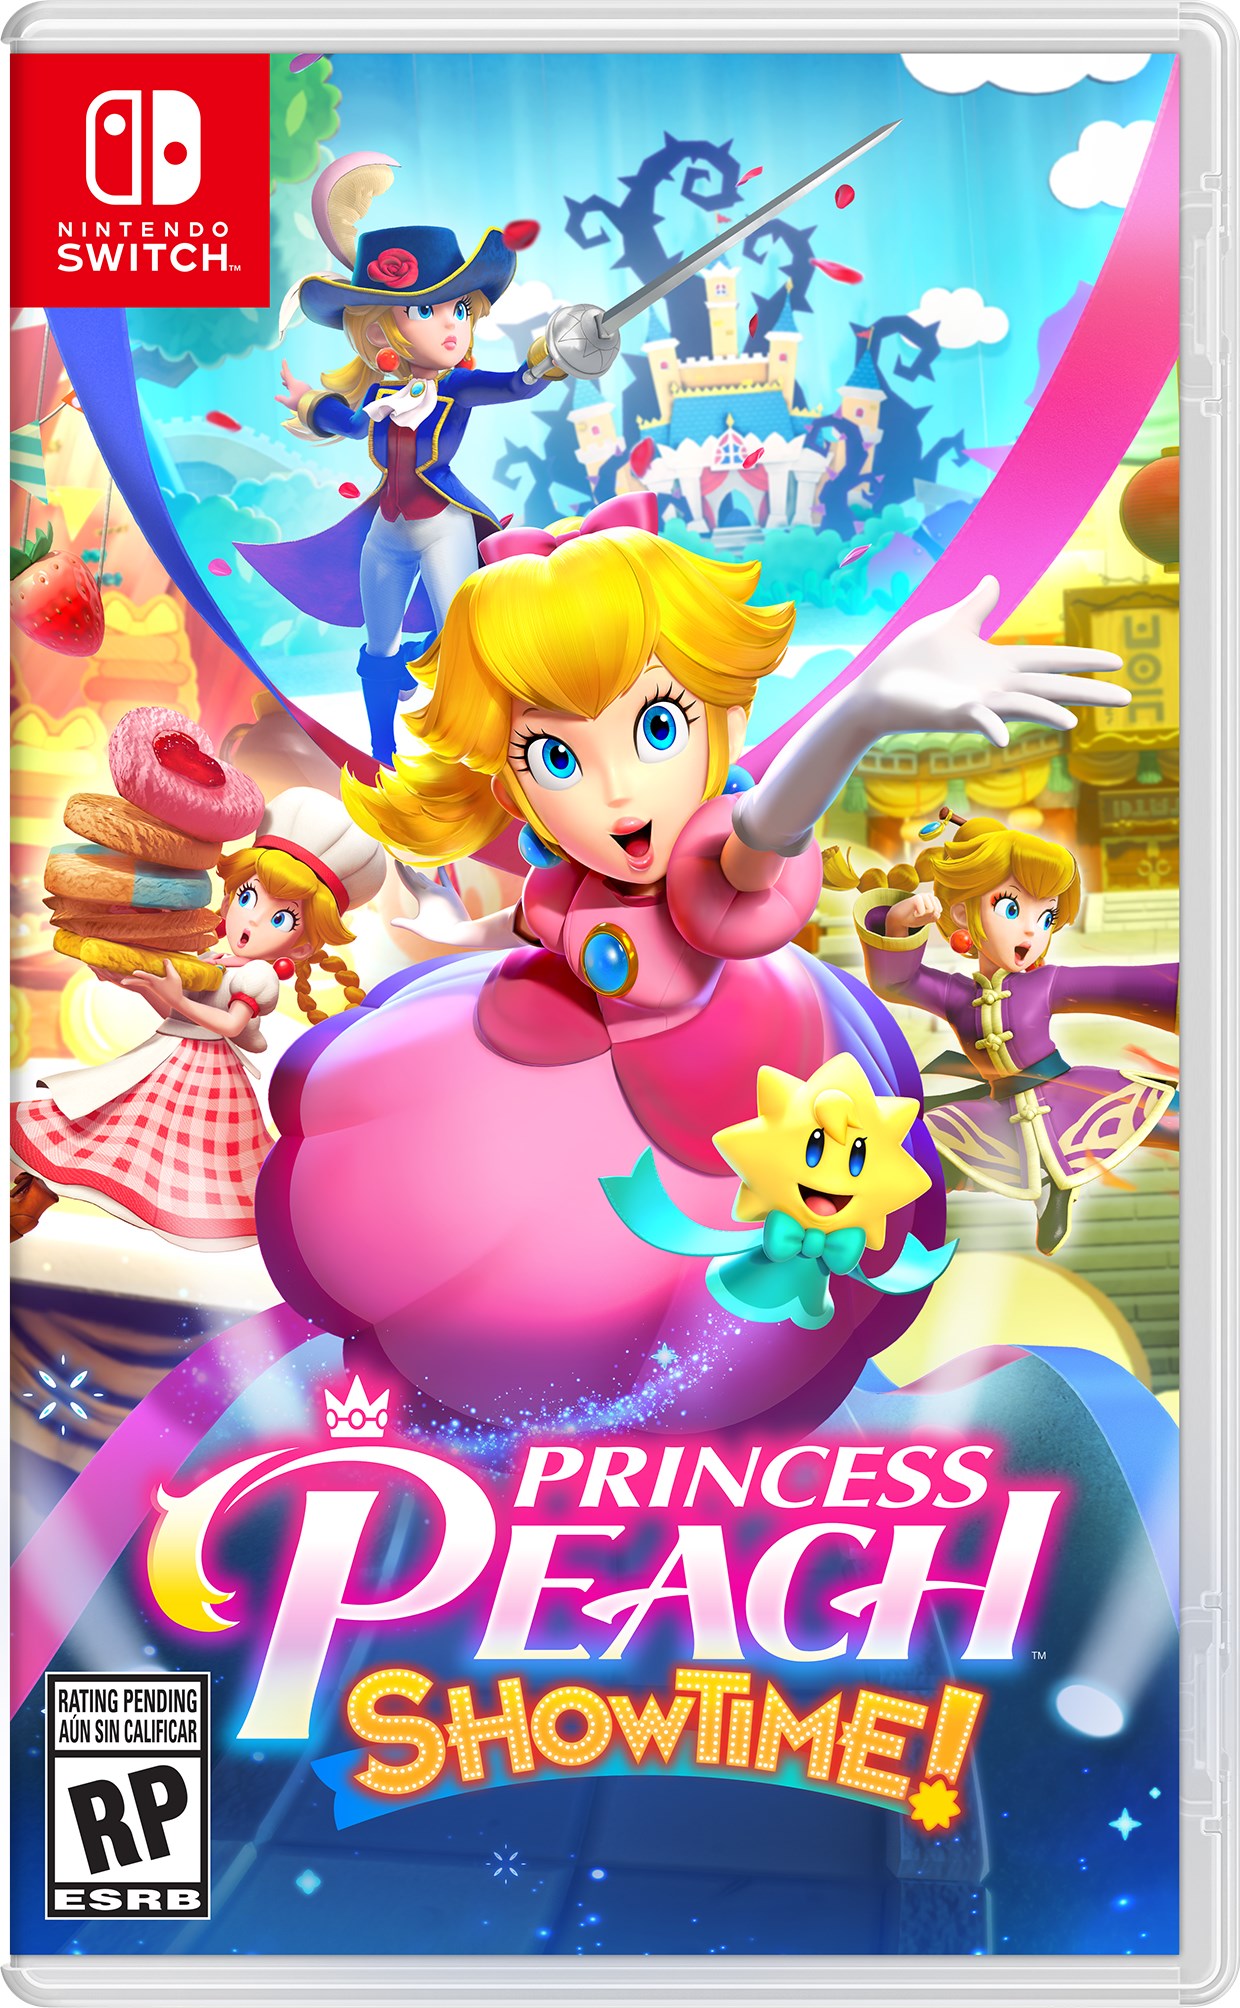 Arquivo Digital - Jogo Americano - Princesa Peach